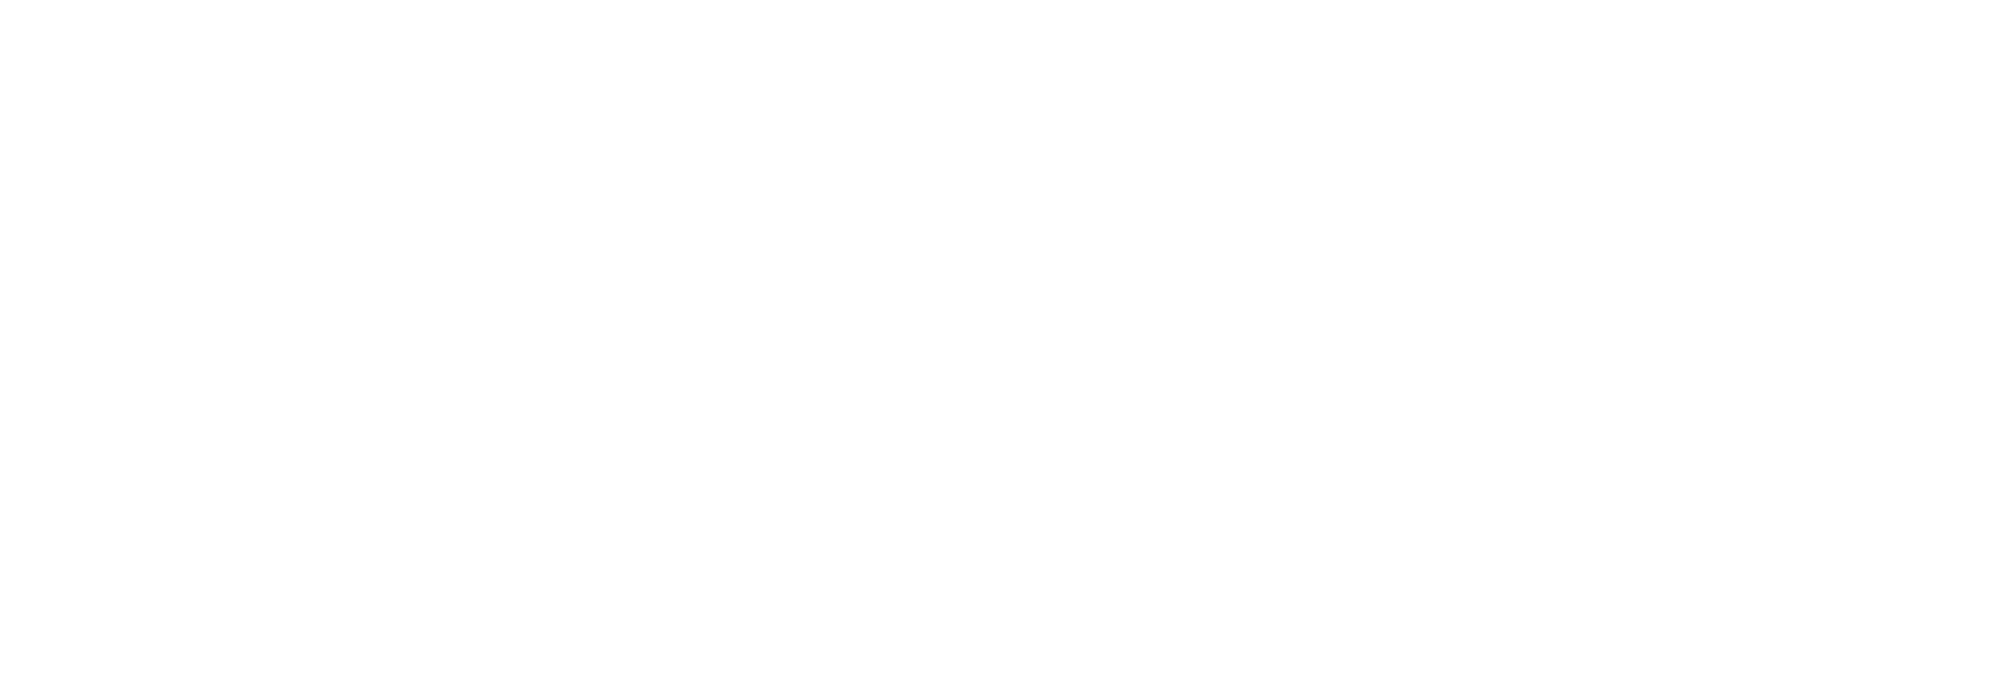 NorskVegmuseum